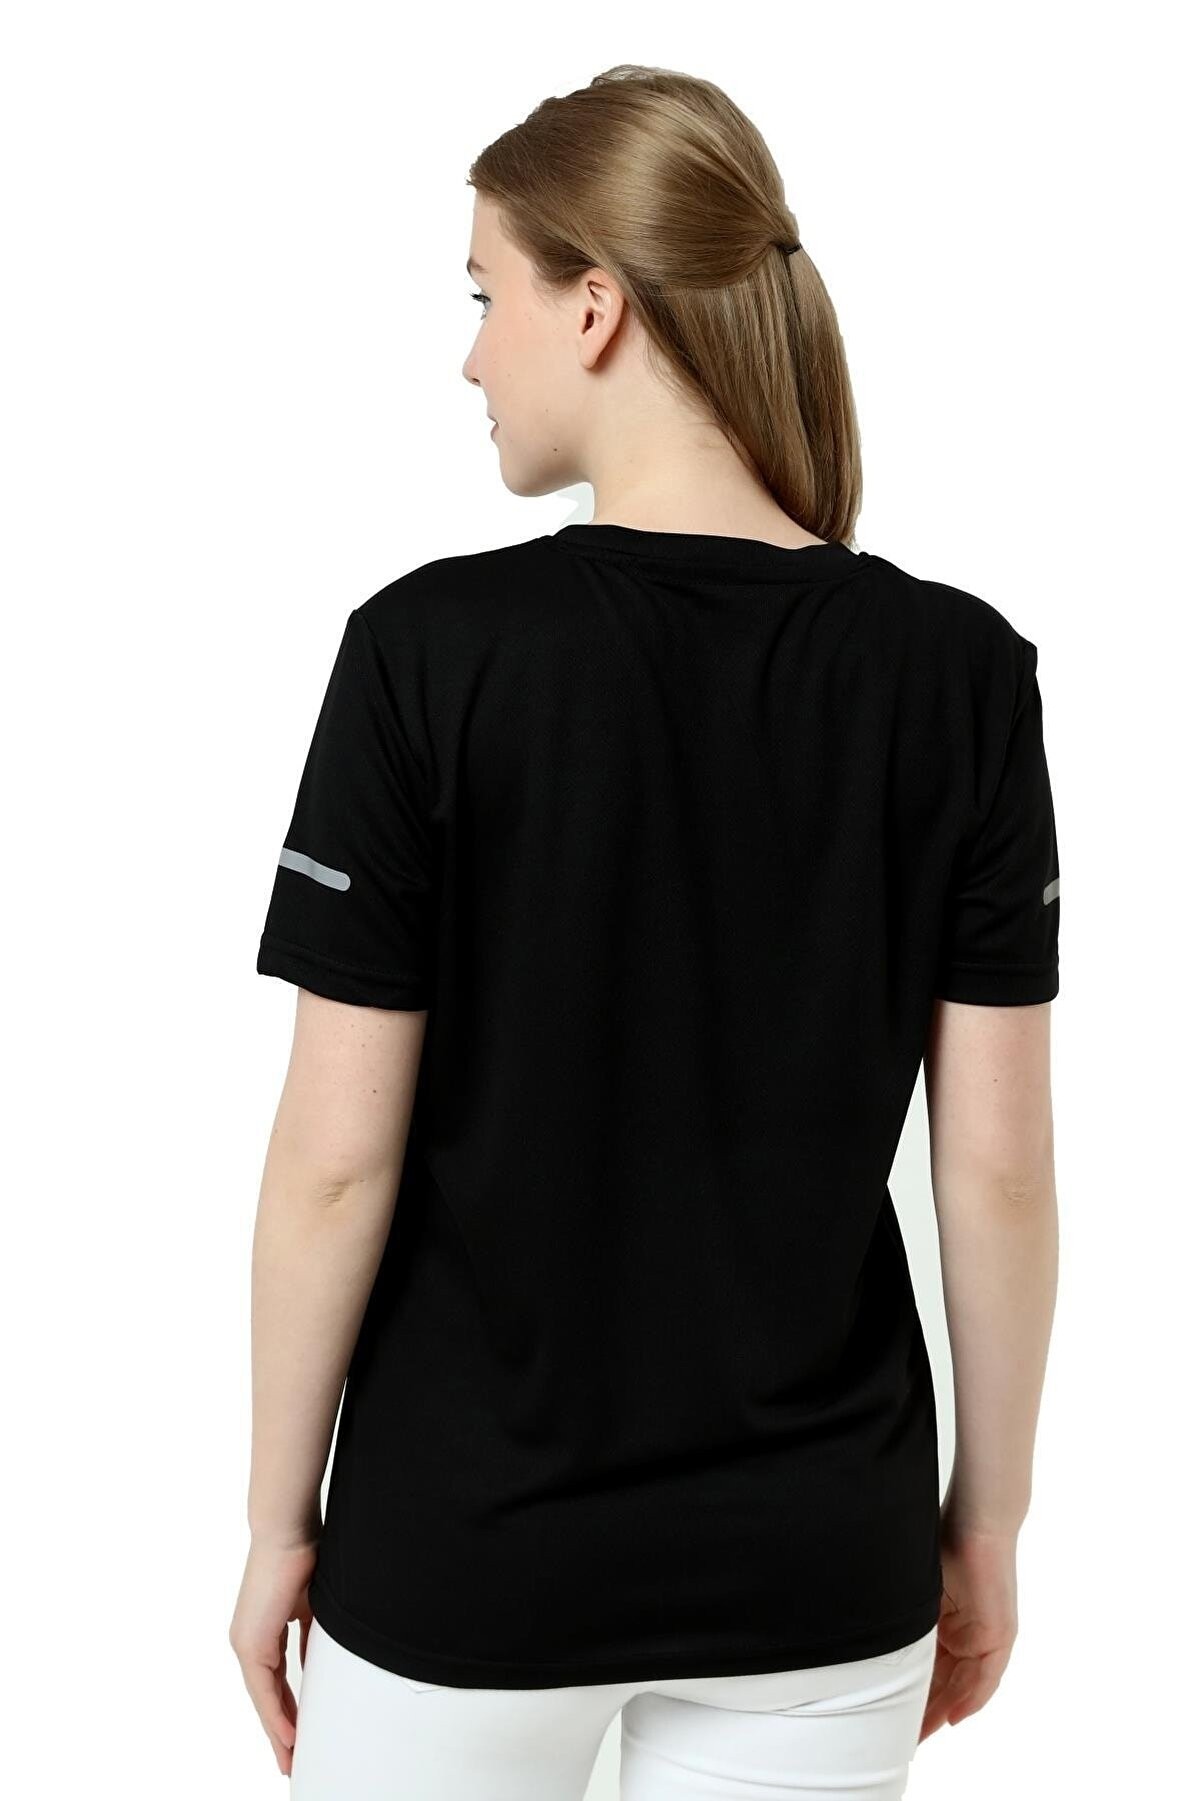 Ghassy Co. Kadın Nem Emici Hızlı Kuruma Atletik Teknik Performans T-shirt